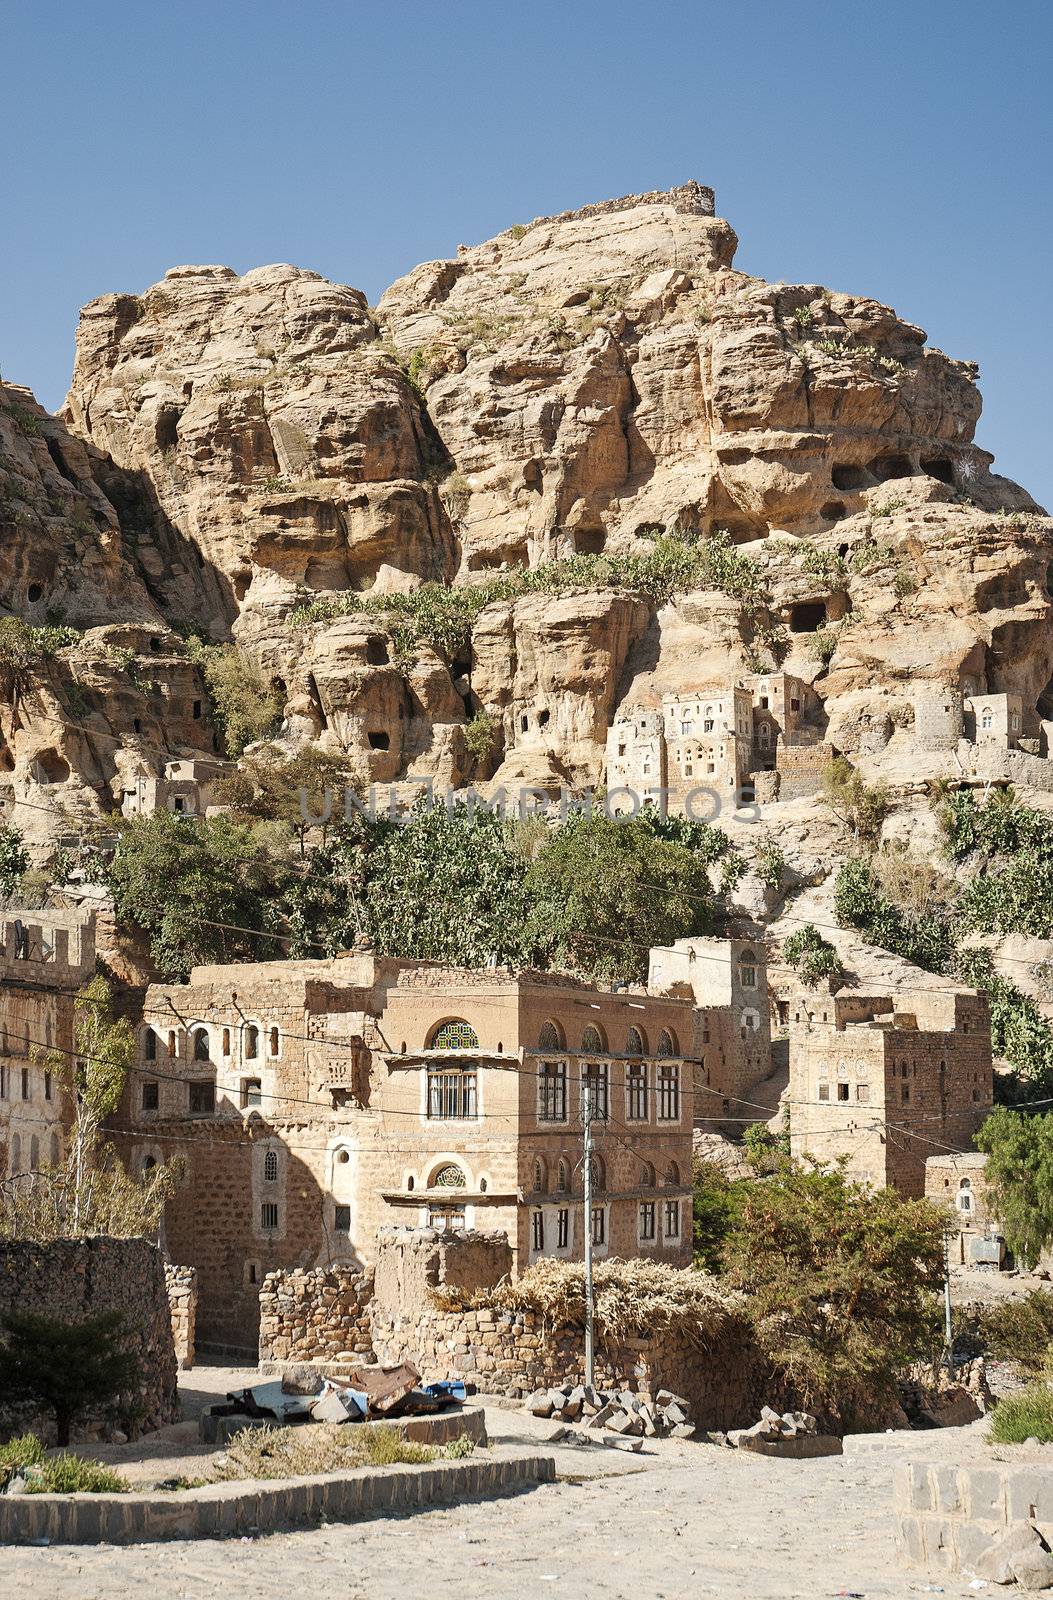 yemeni mountain village near sanaa in yemen